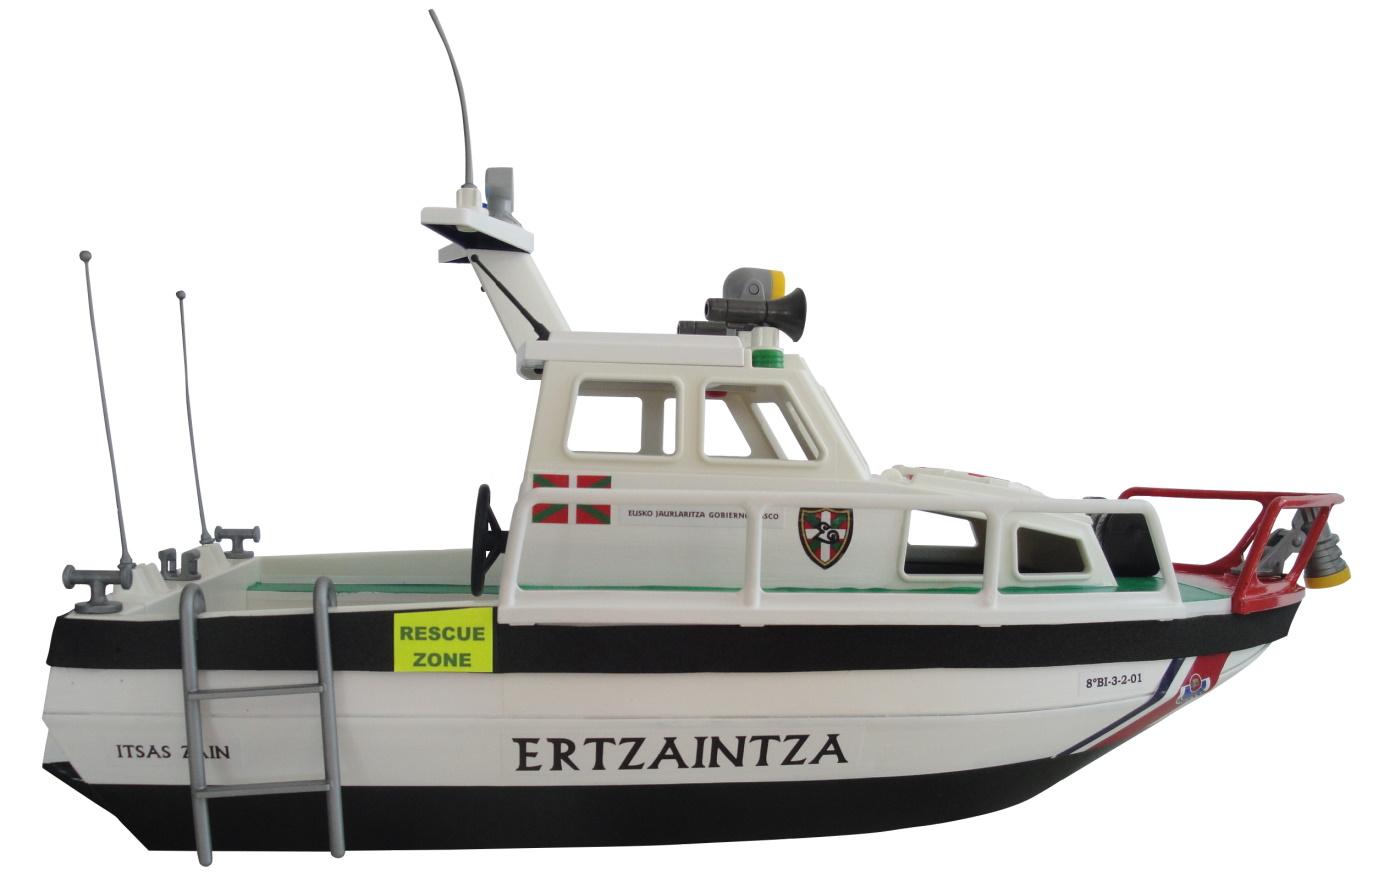 Patrullera Barco Playmobil personalizada con los distintivos de la Ertzaintza Policía de Euskadi País Vasco